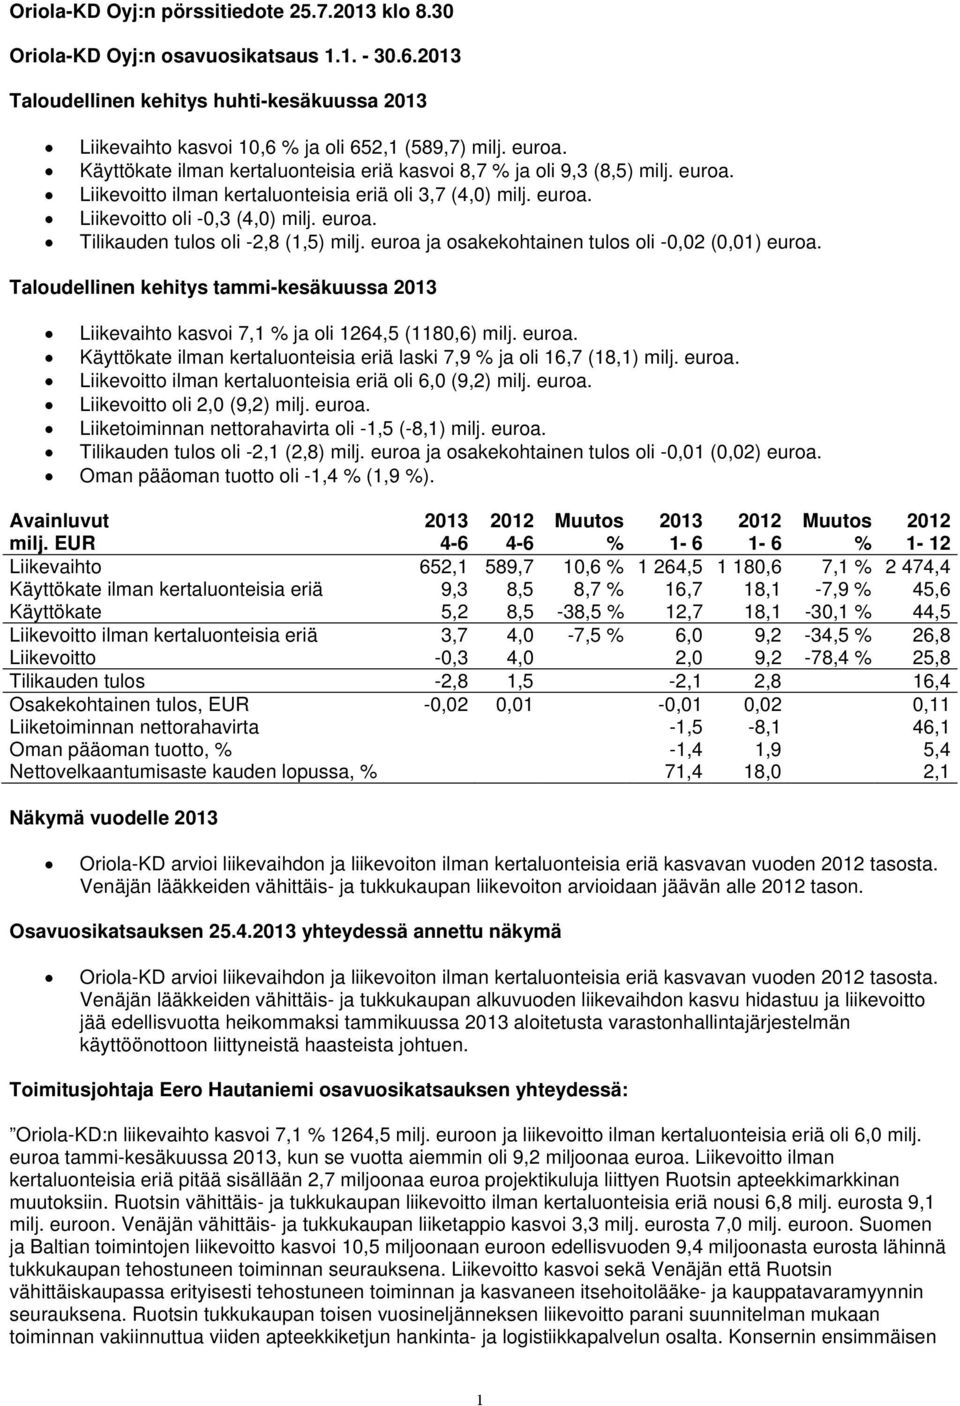 euroa ja osakekohtainen tulos oli -0,02 (0,01) euroa. Taloudellinen kehitys tammi-kesäkuussa 2013 Liikevaihto kasvoi 7,1 % ja oli 1264,5 (1180,6) milj. euroa. Käyttökate ilman kertaluonteisia eriä laski 7,9 % ja oli 16,7 (18,1) milj.